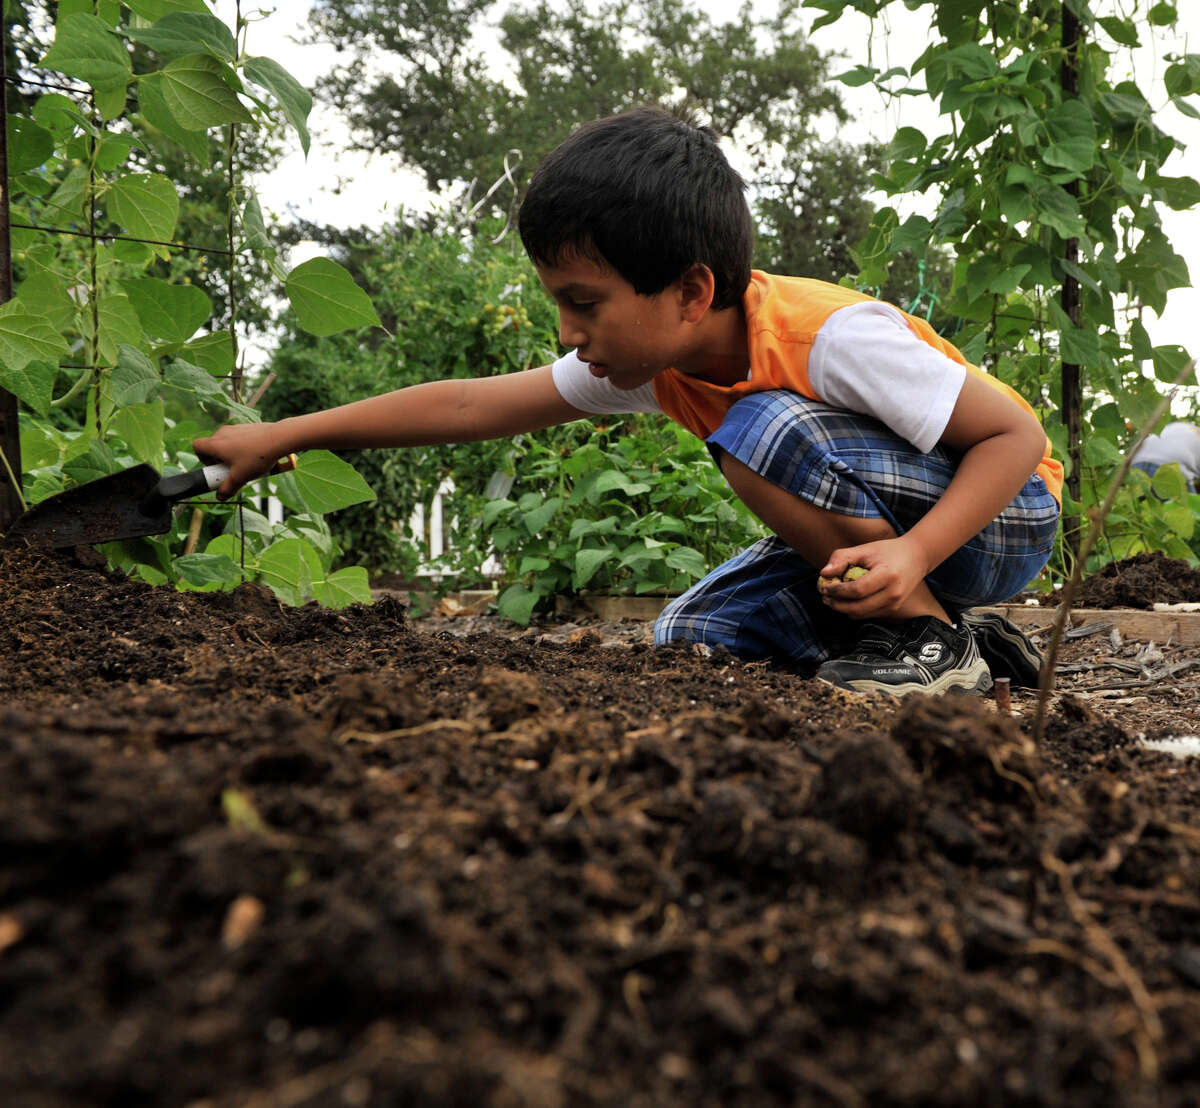 Make a backyard vegetable garden a family project.